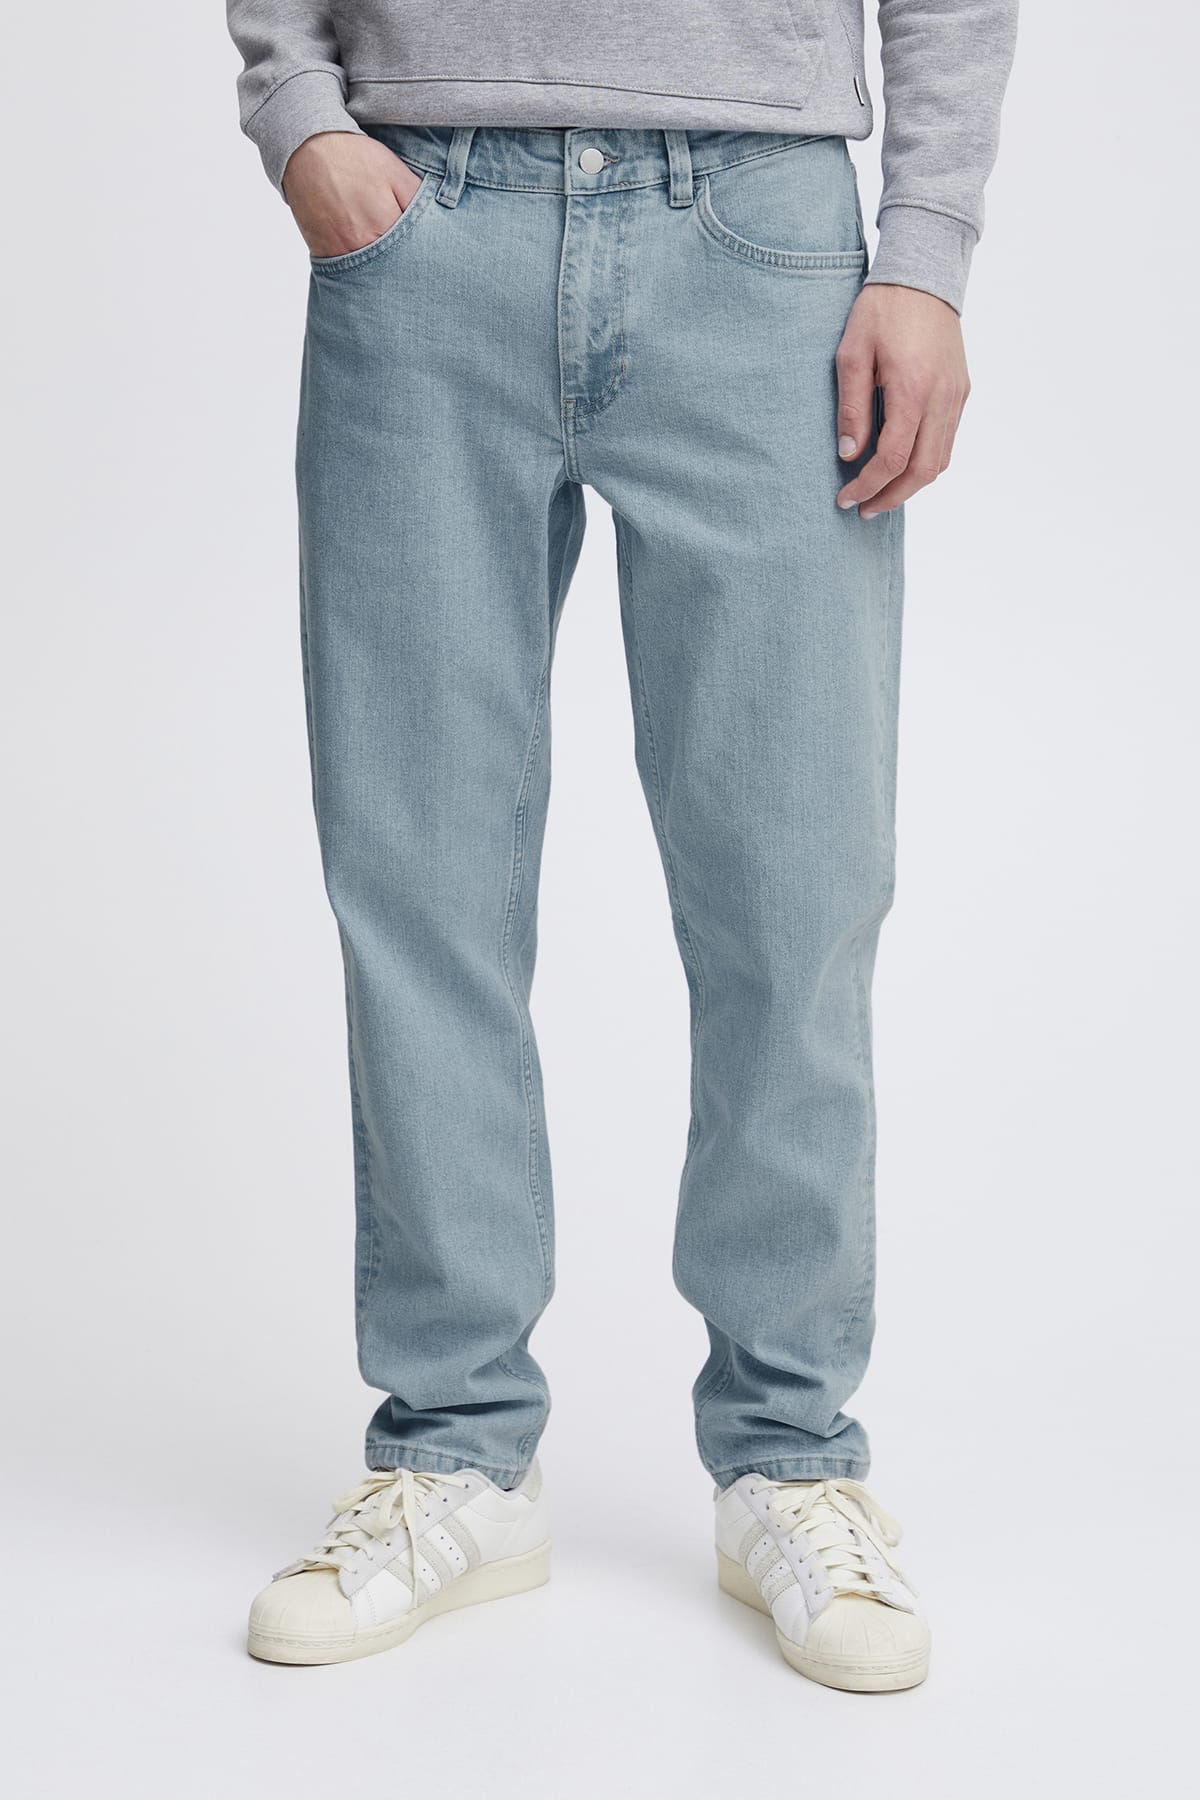 Jeans Karup 5 pocket regular jeans Denim bleach blue Jeans Casual Friday 